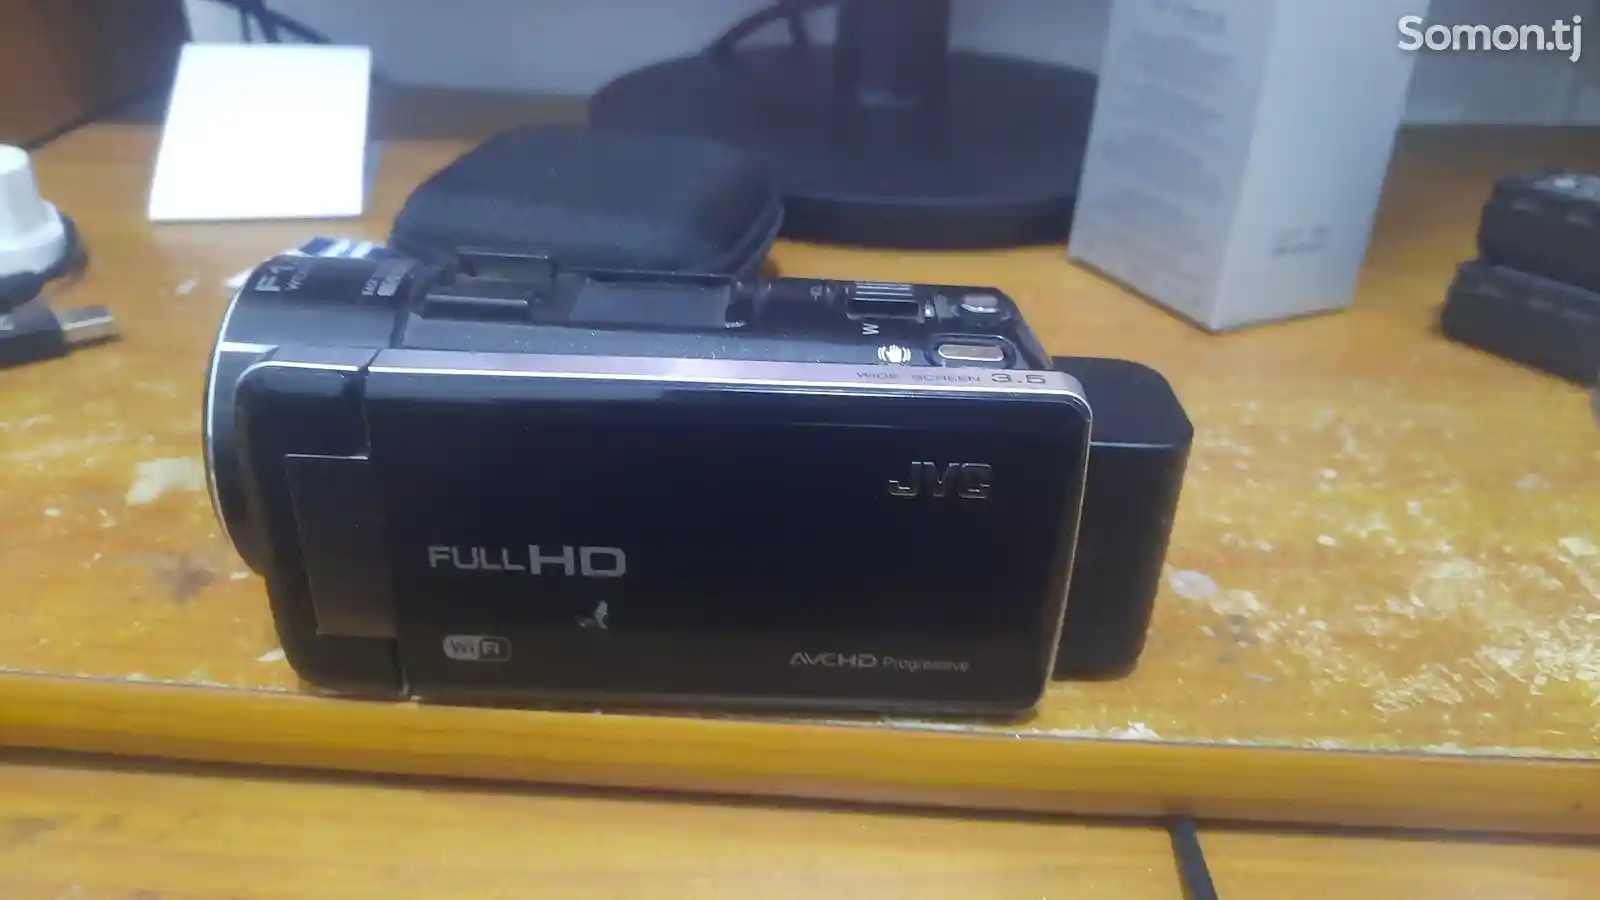 Видеокамера jvc fulHD-3